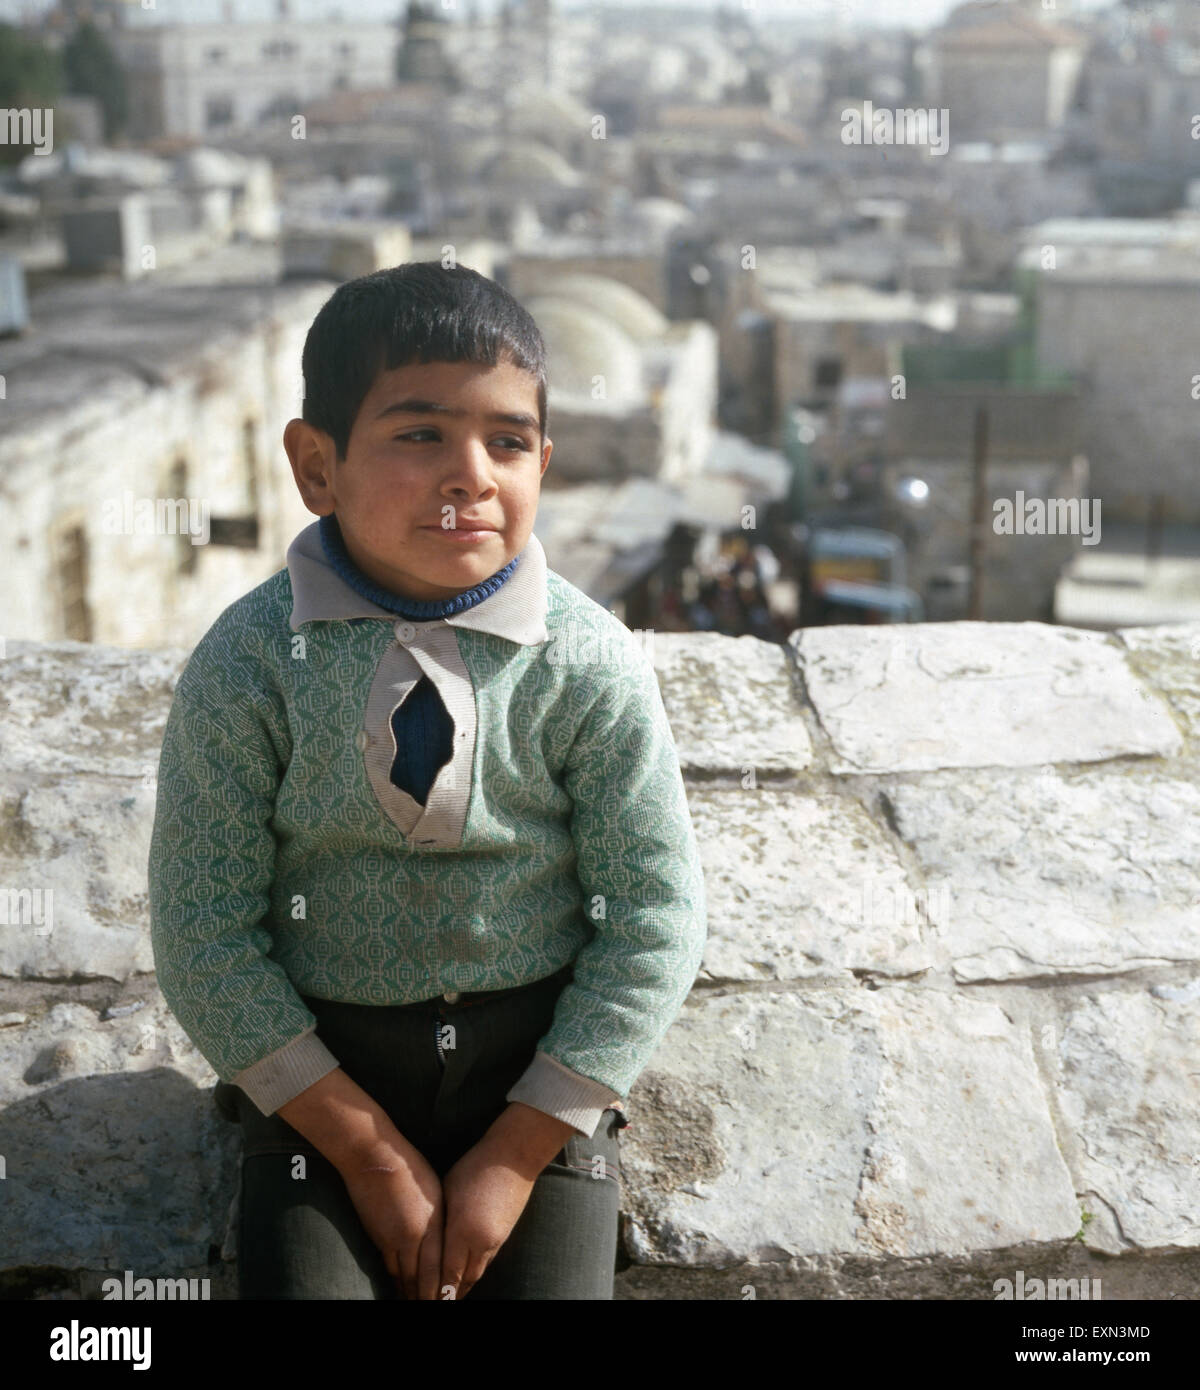 Ein kleiner Junge in Israel, 1970er Jahre.  A little boy in Israel, 1970s. Stock Photo